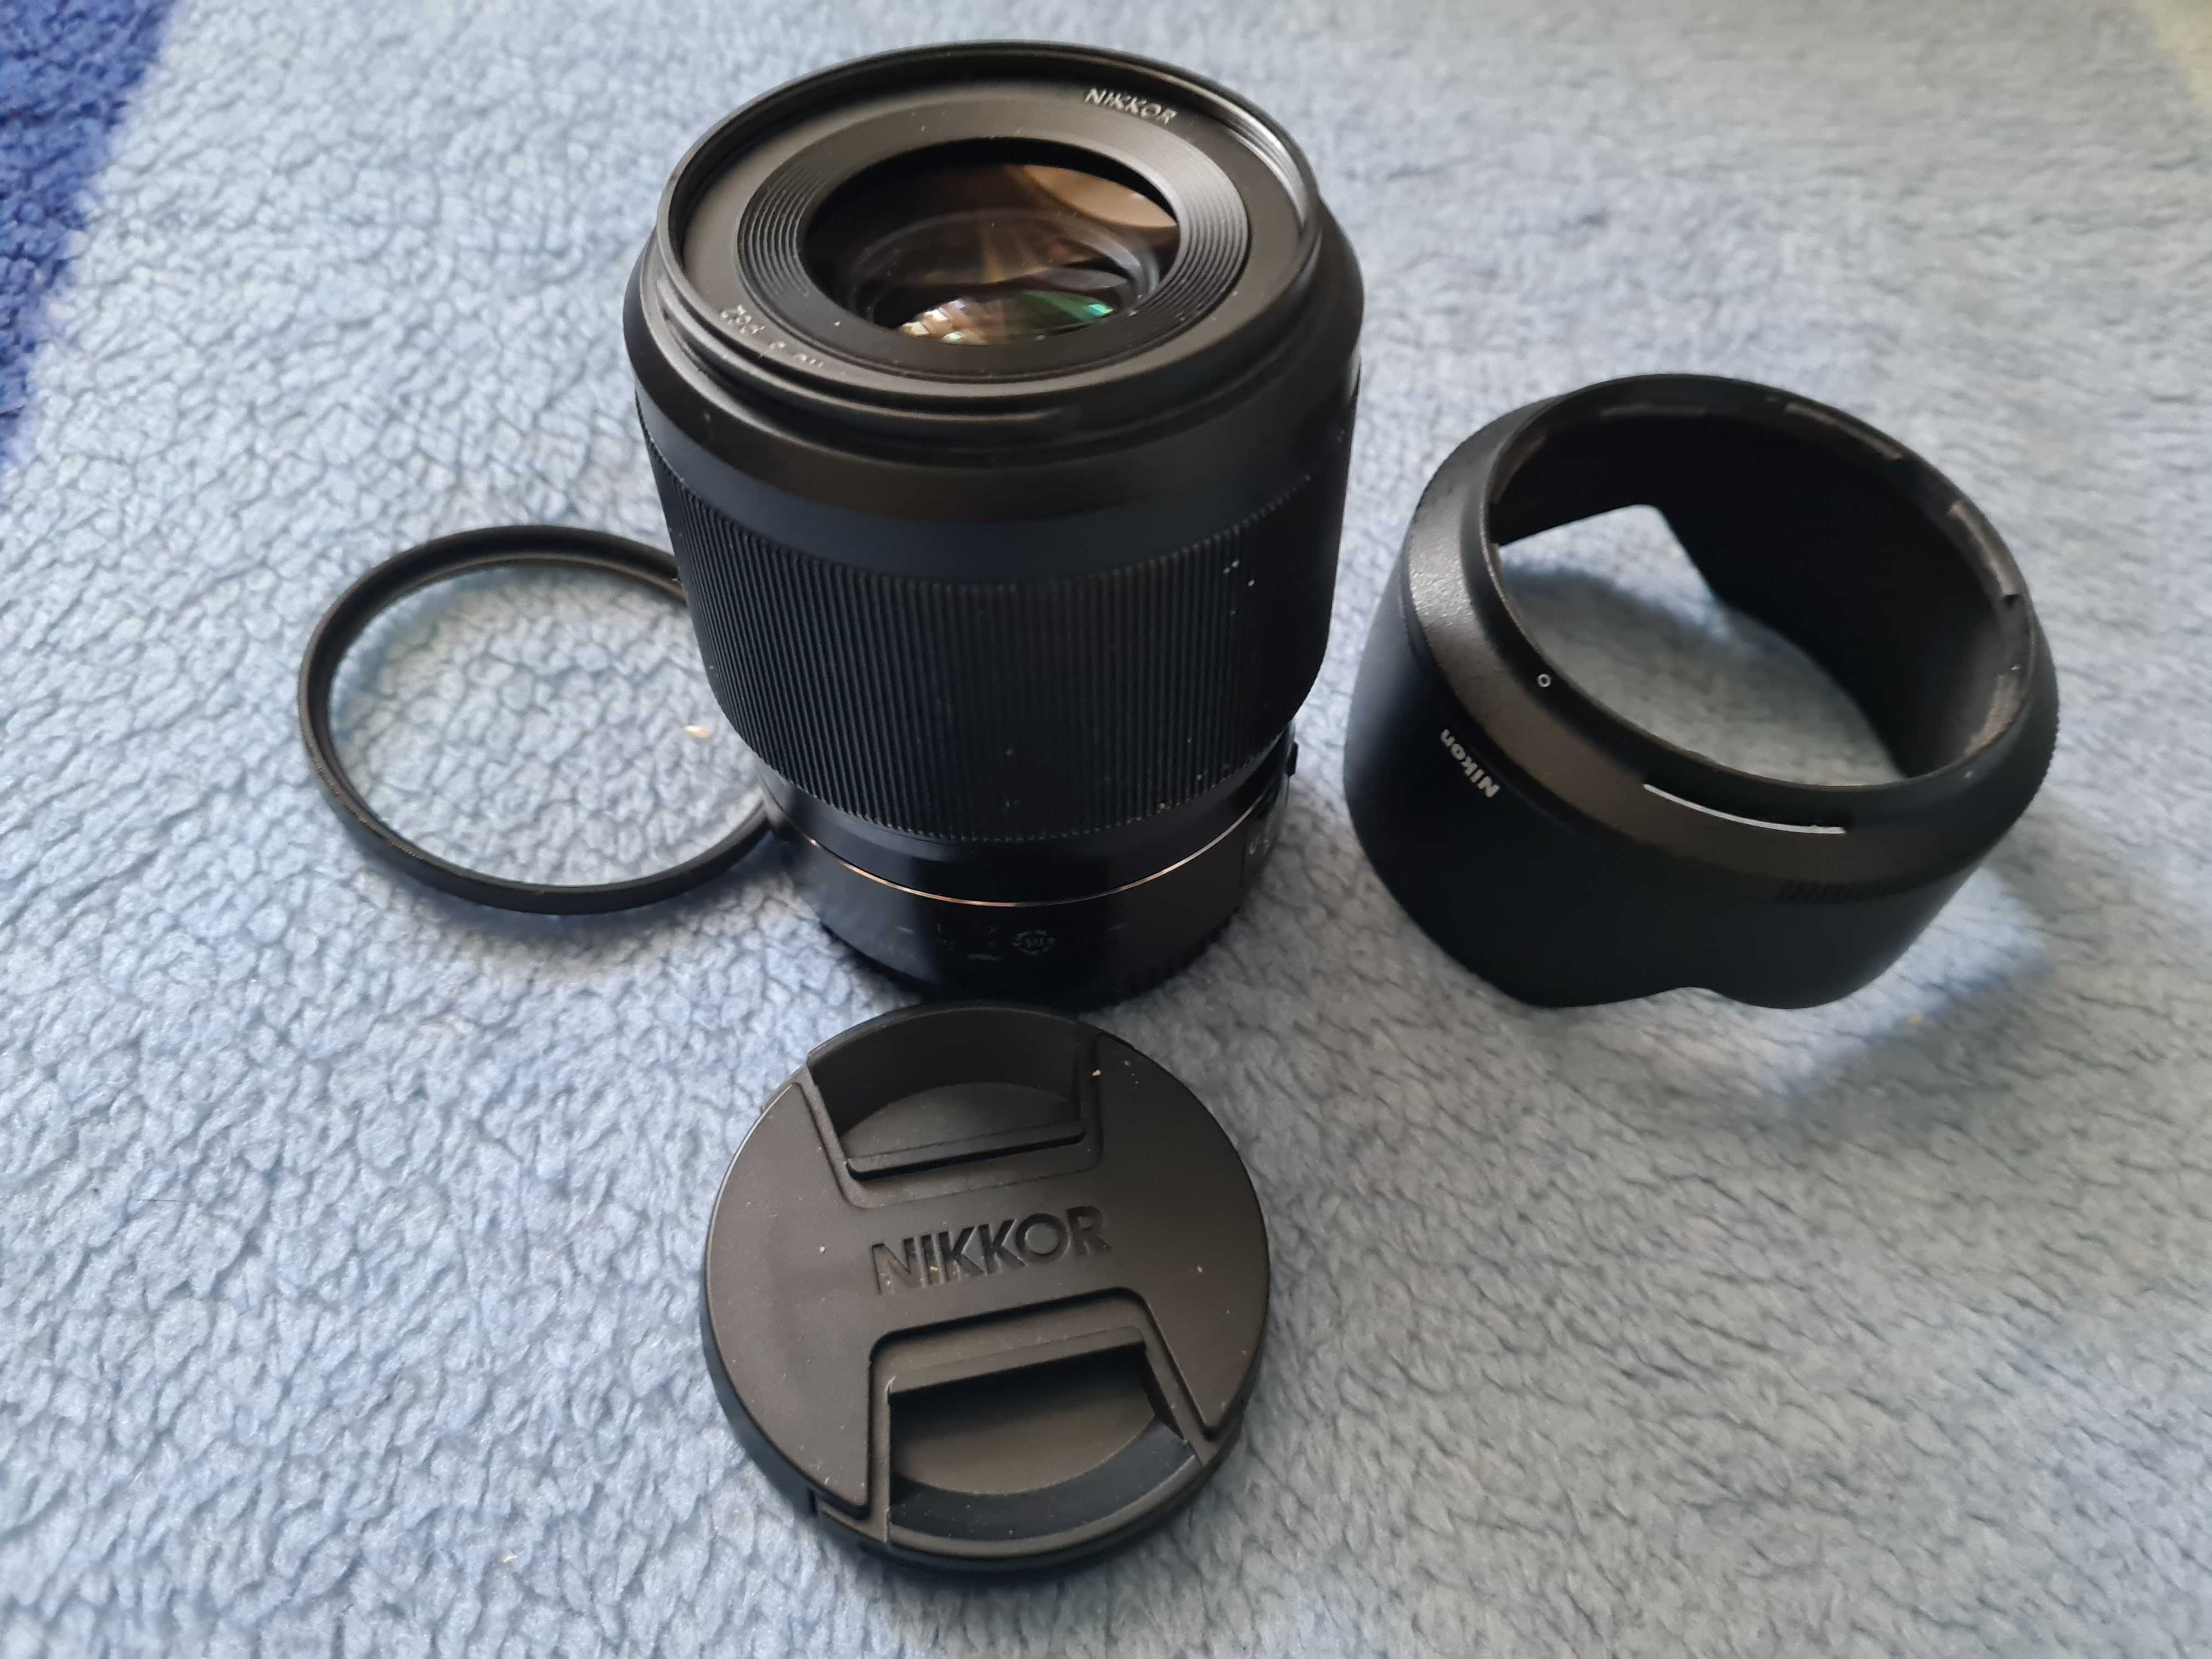 Nikon Z 50mm f/1.8 S Obiectiv Mirrorless